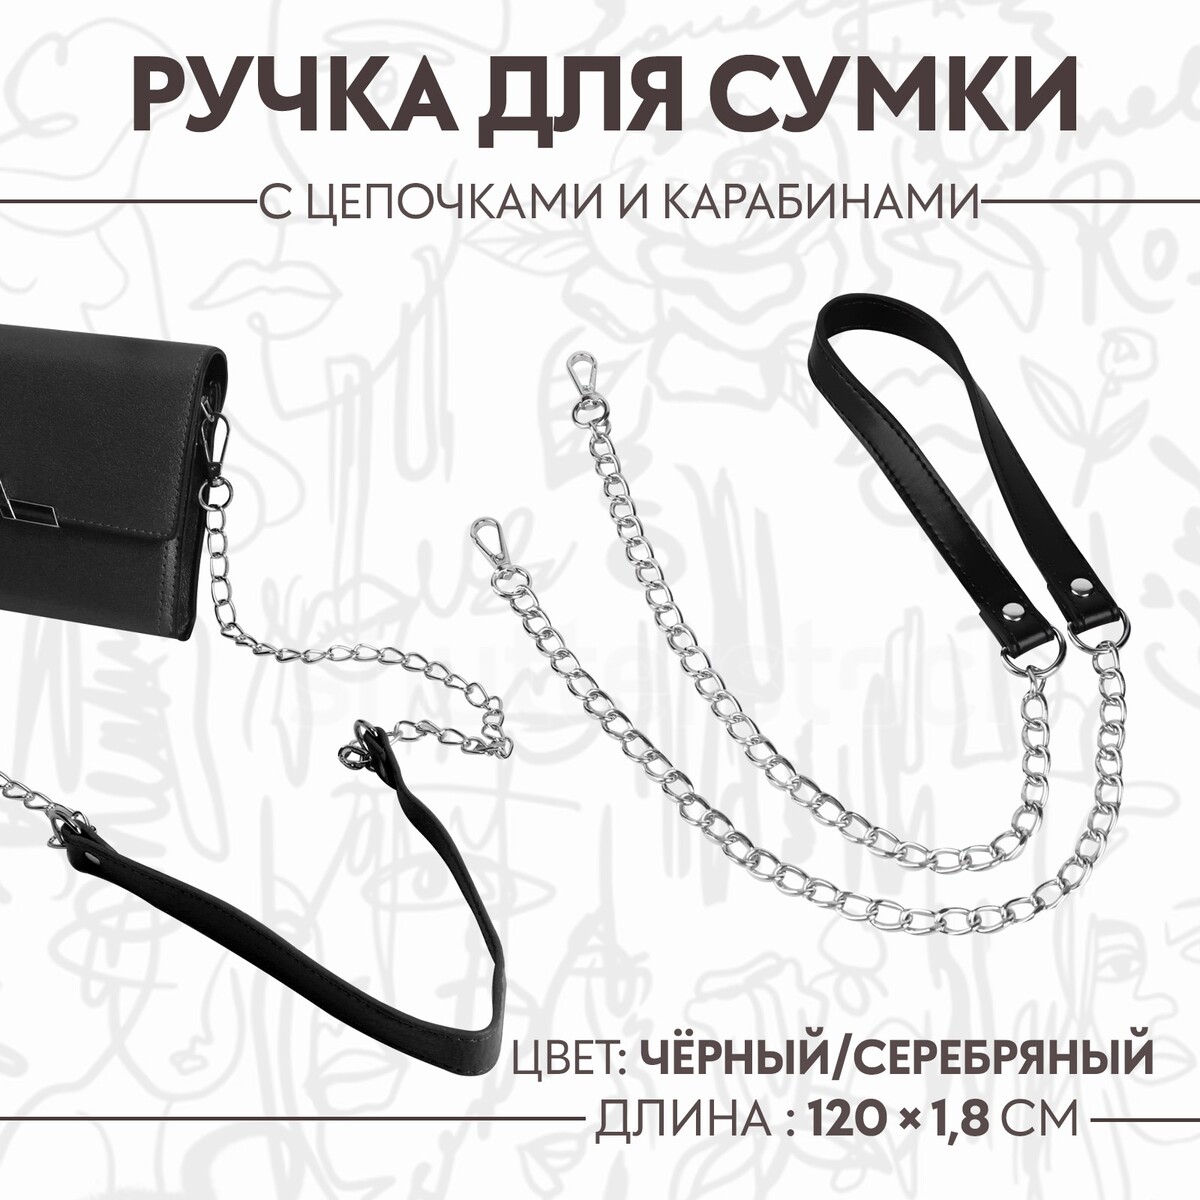 Ручка для сумки, с цепочками и карабинами, 120 × 1,8 см, цвет черный ручка для сумки с цепочками и карабинами 120 × 1 8 см